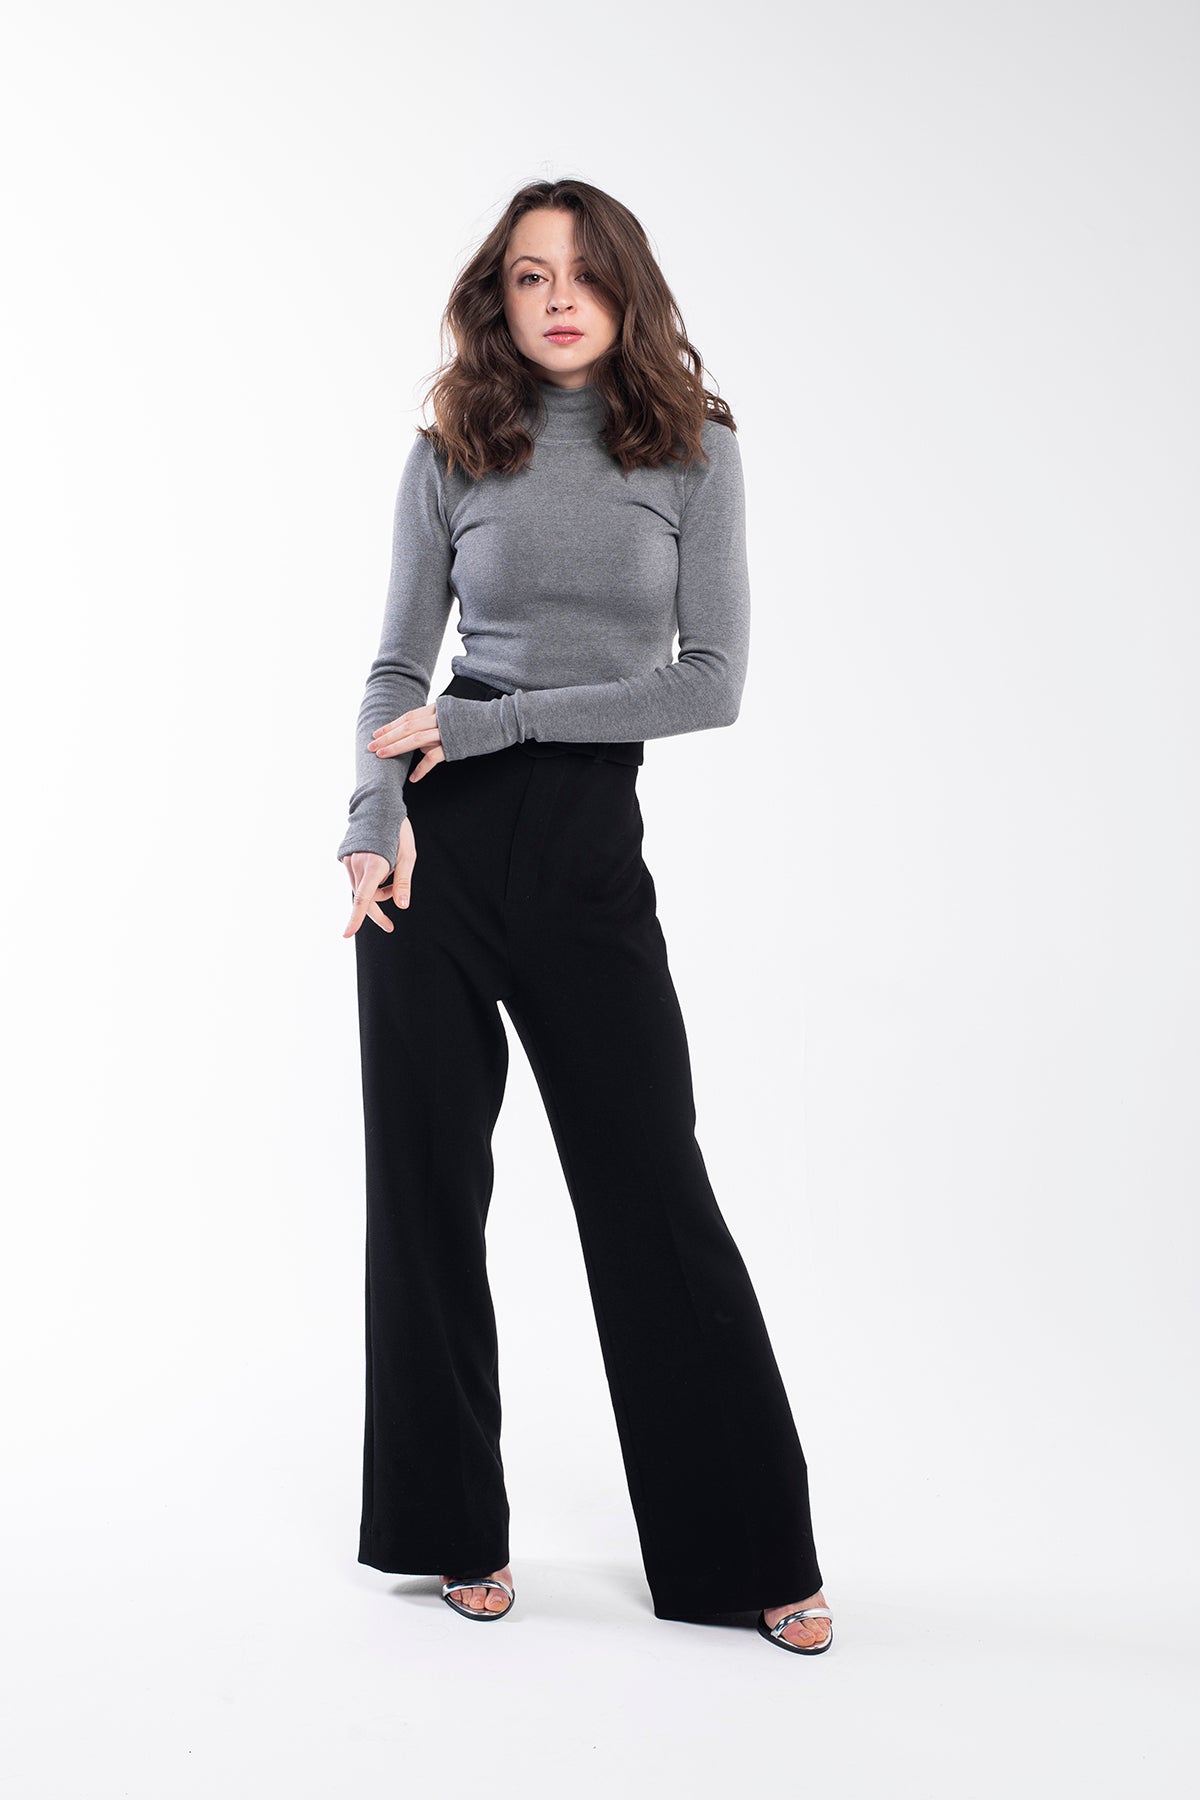 Grey fine-knit turtleneck sweater for women.